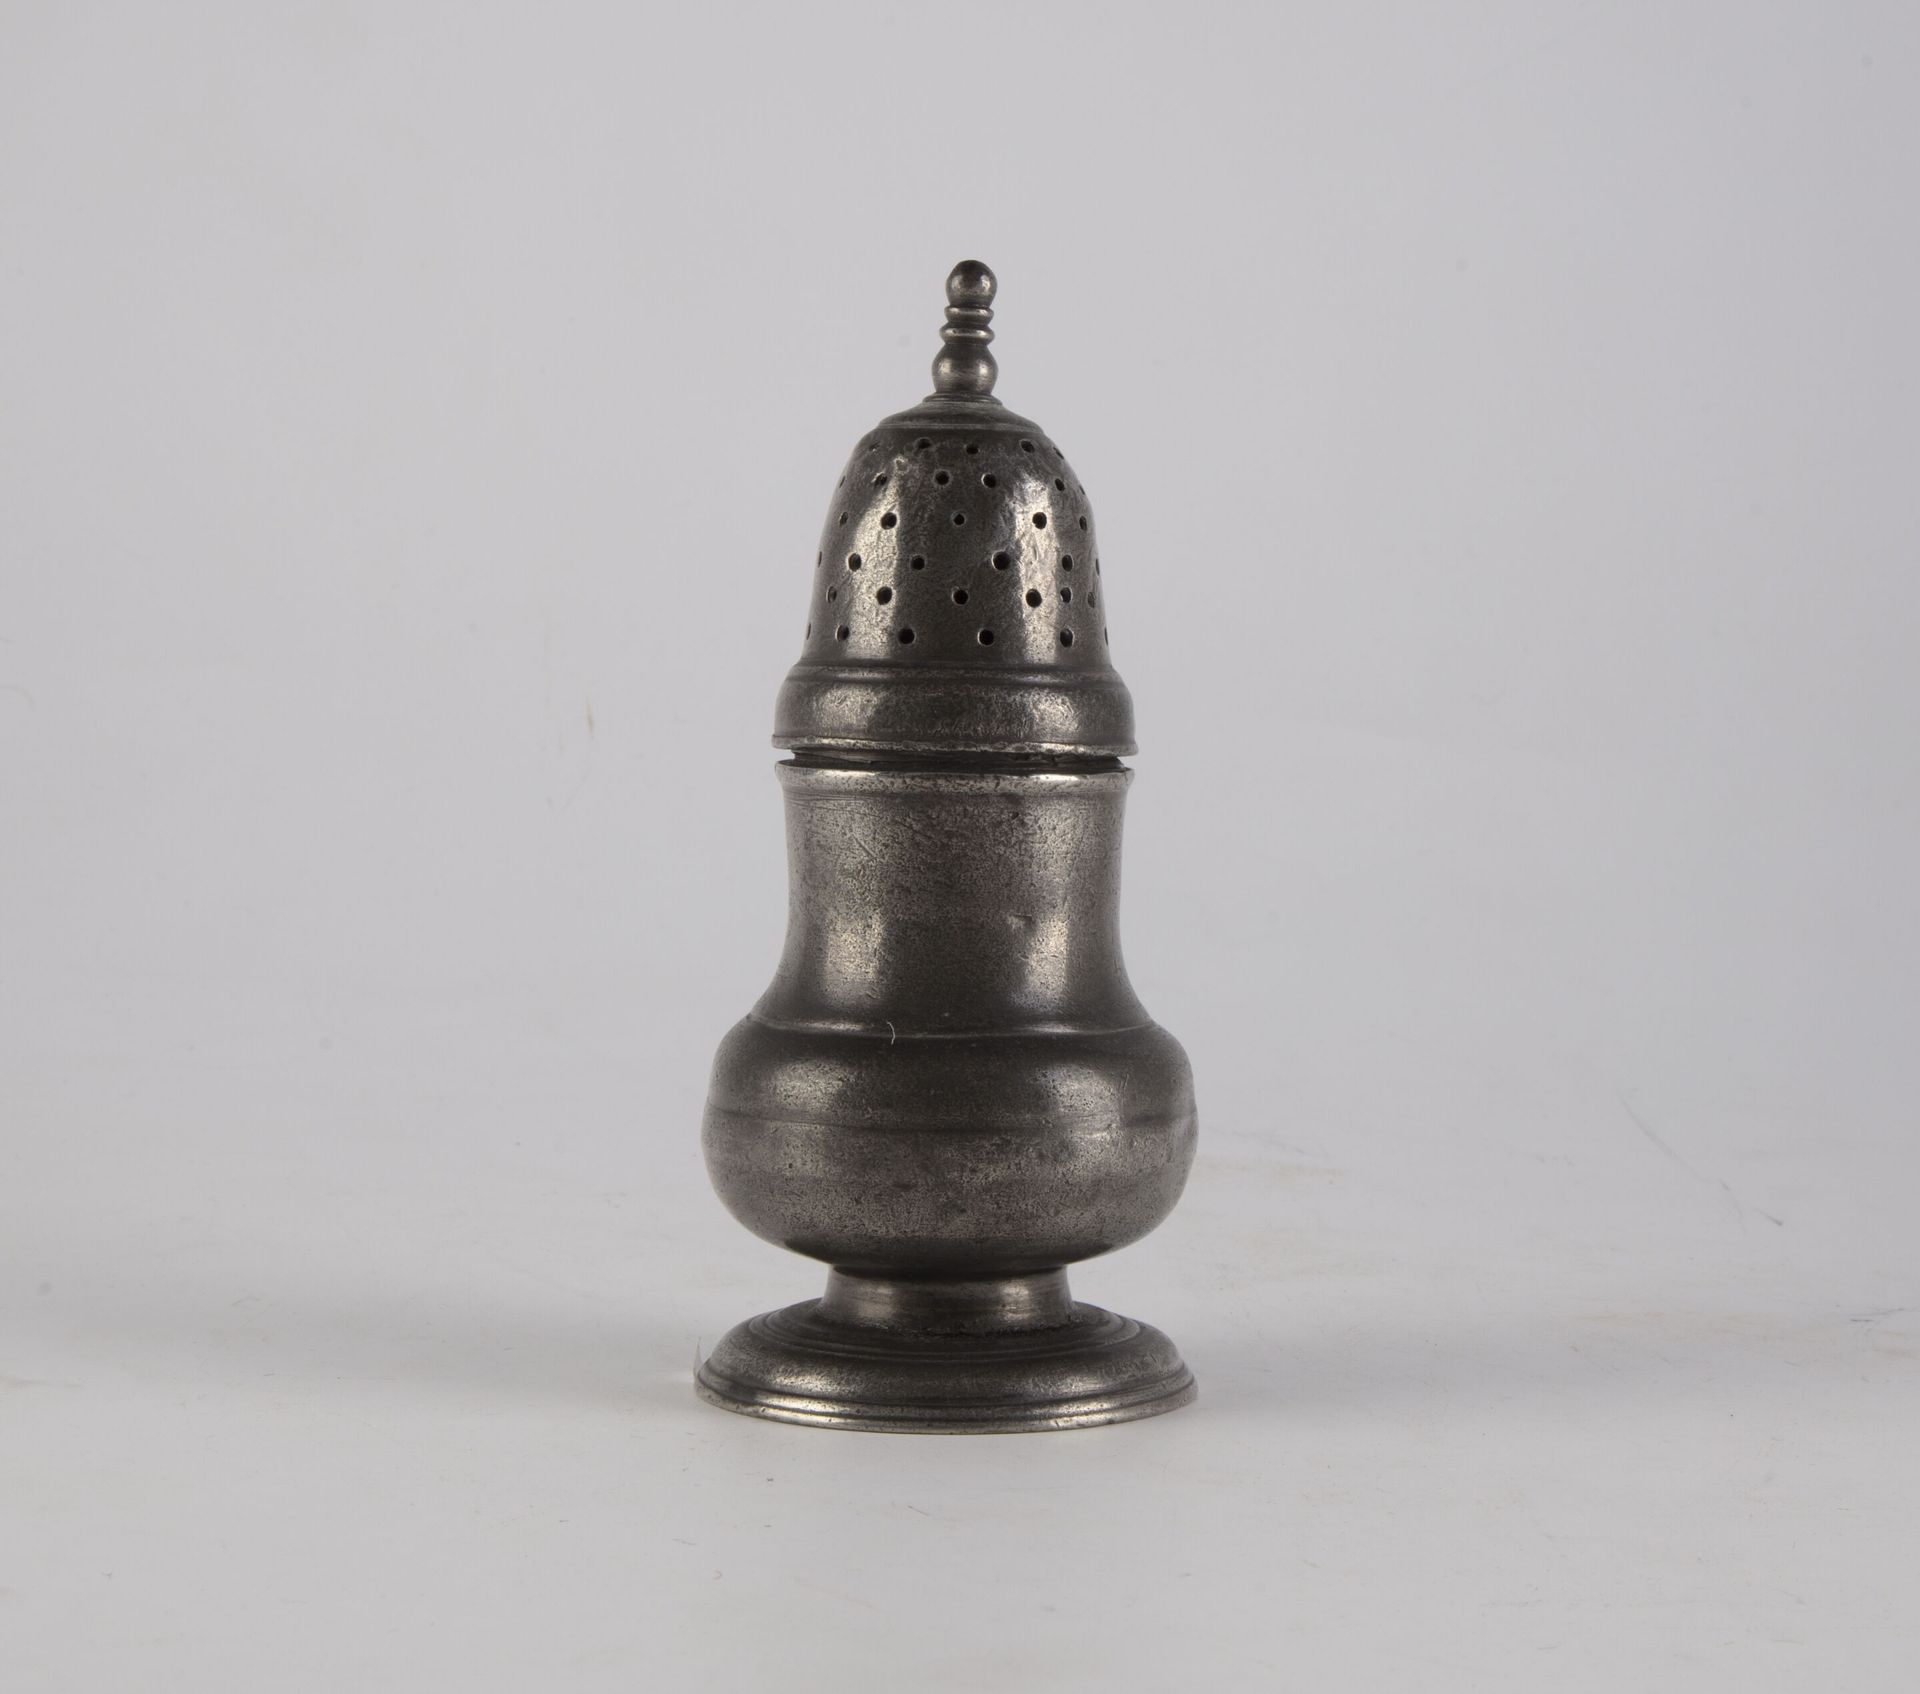 Null Balusterförmiger Streuer aus Zinn. 
Epoche XVIII (?)
H. 15,5 cm